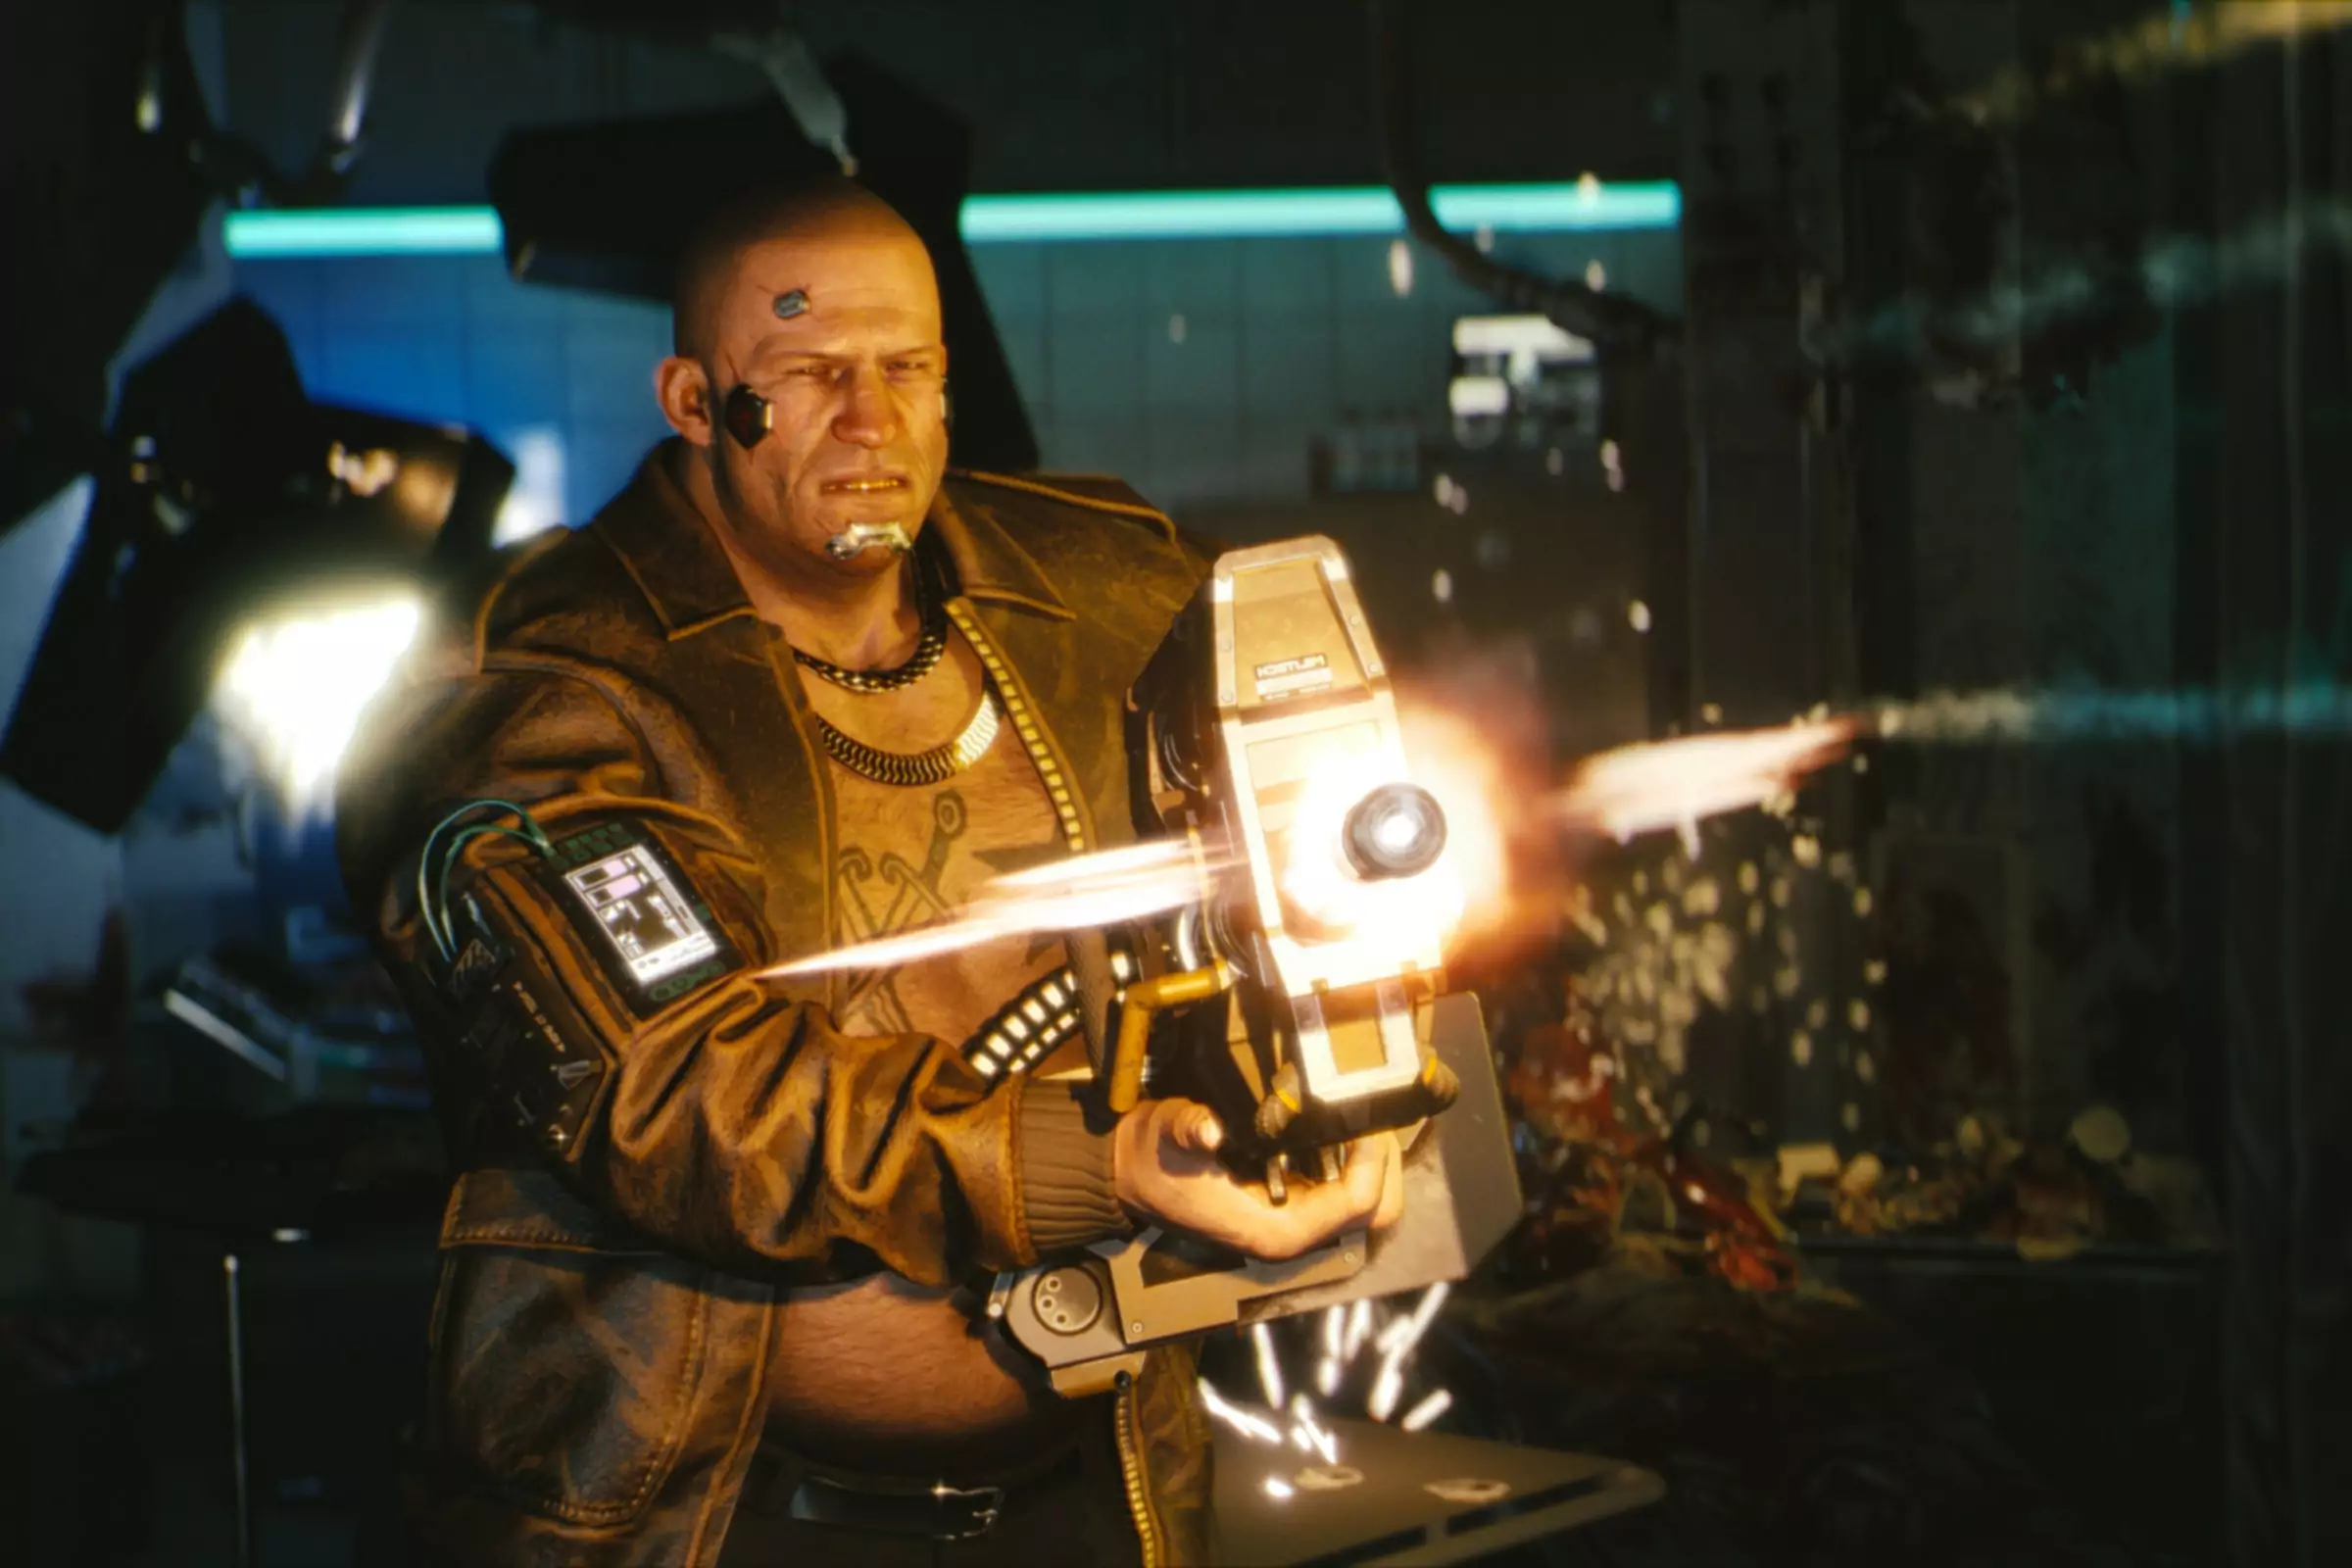 Zaslonska slika igre Cyberpunk 2077, na kateri lik strelja z veliko strojno puško